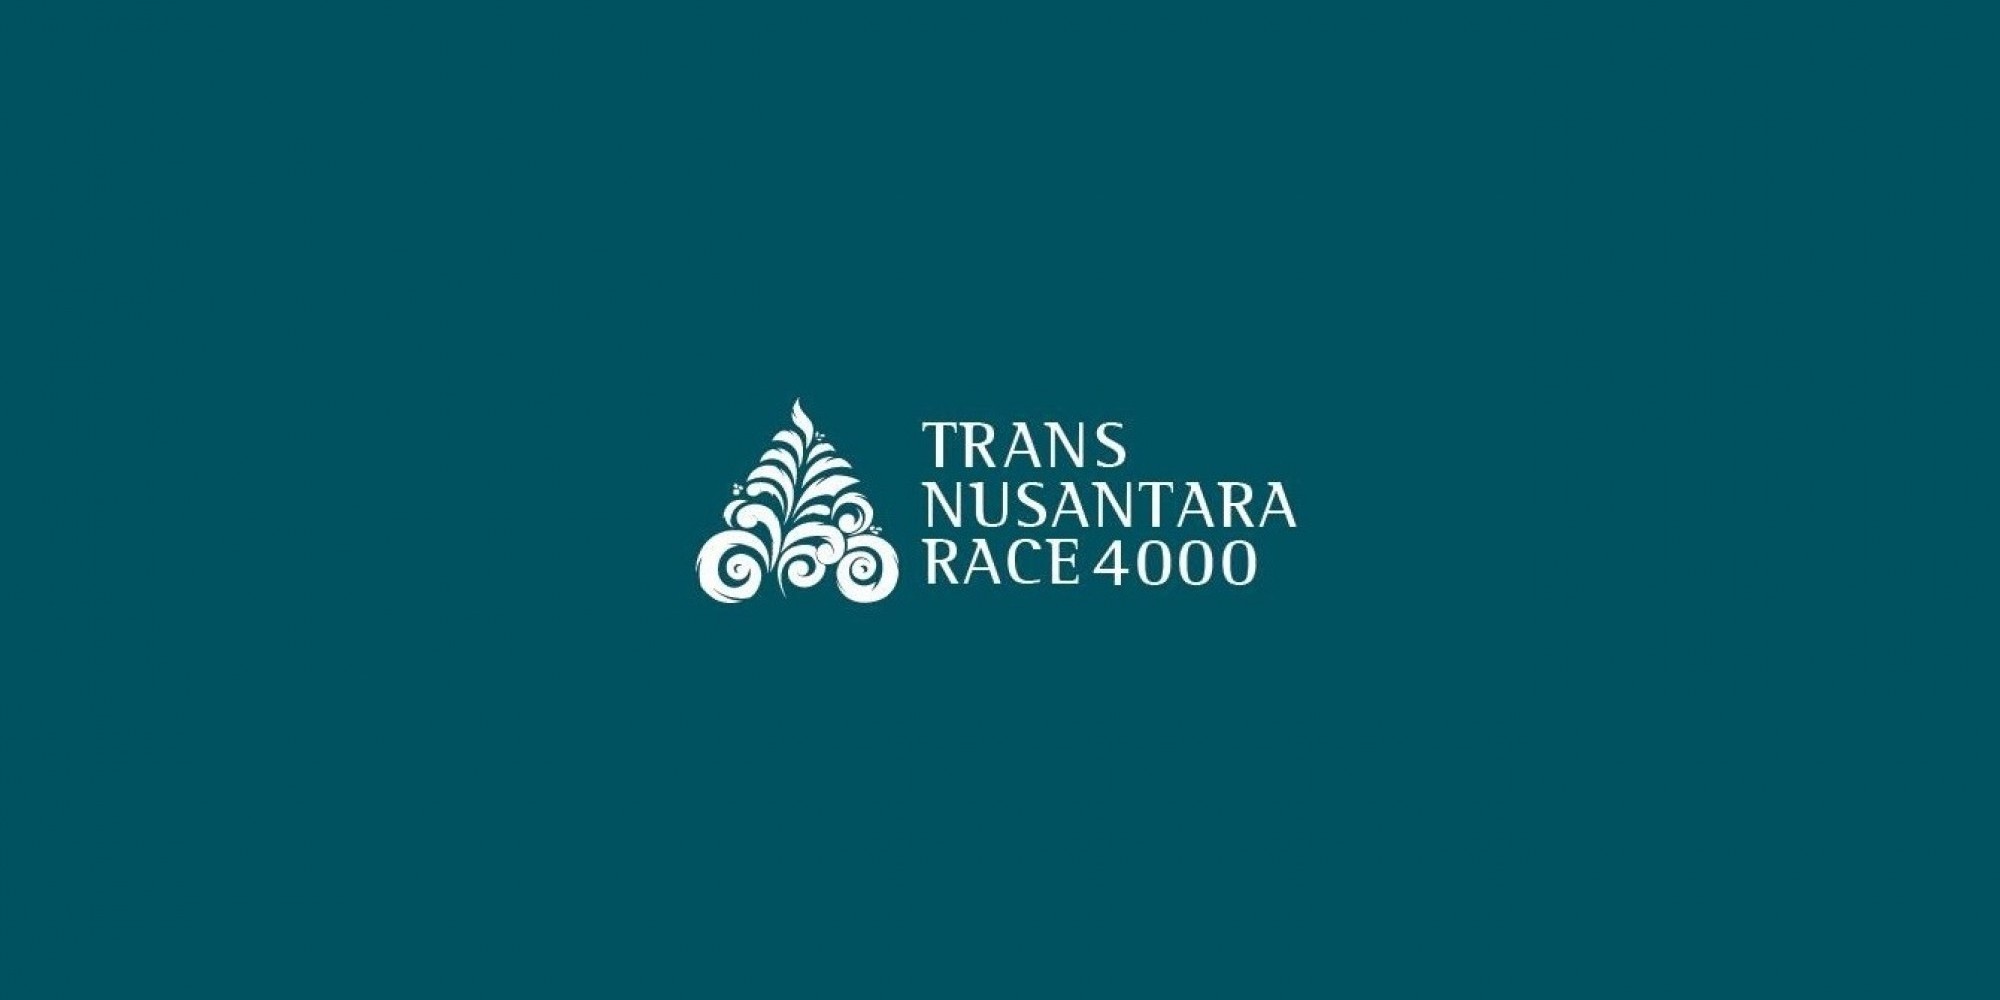 TRANS NUSANTARA RACE 4000